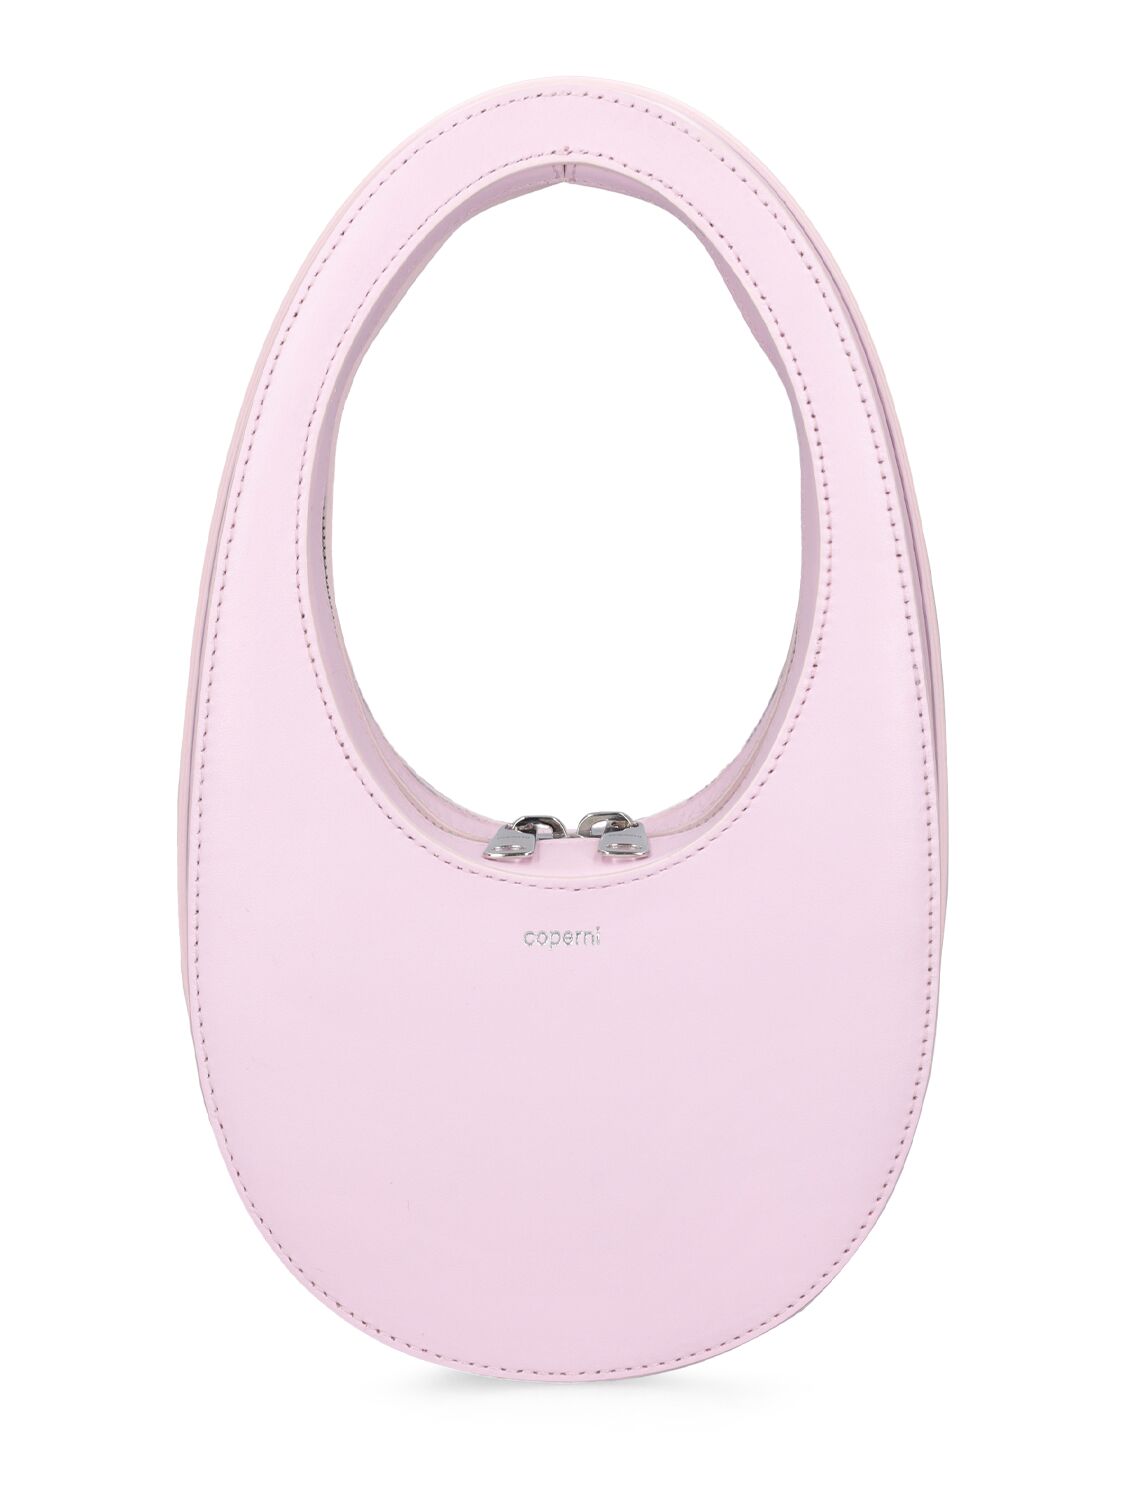 Coperni Mini Swipe Leather Top Handle Bag In Light Pink